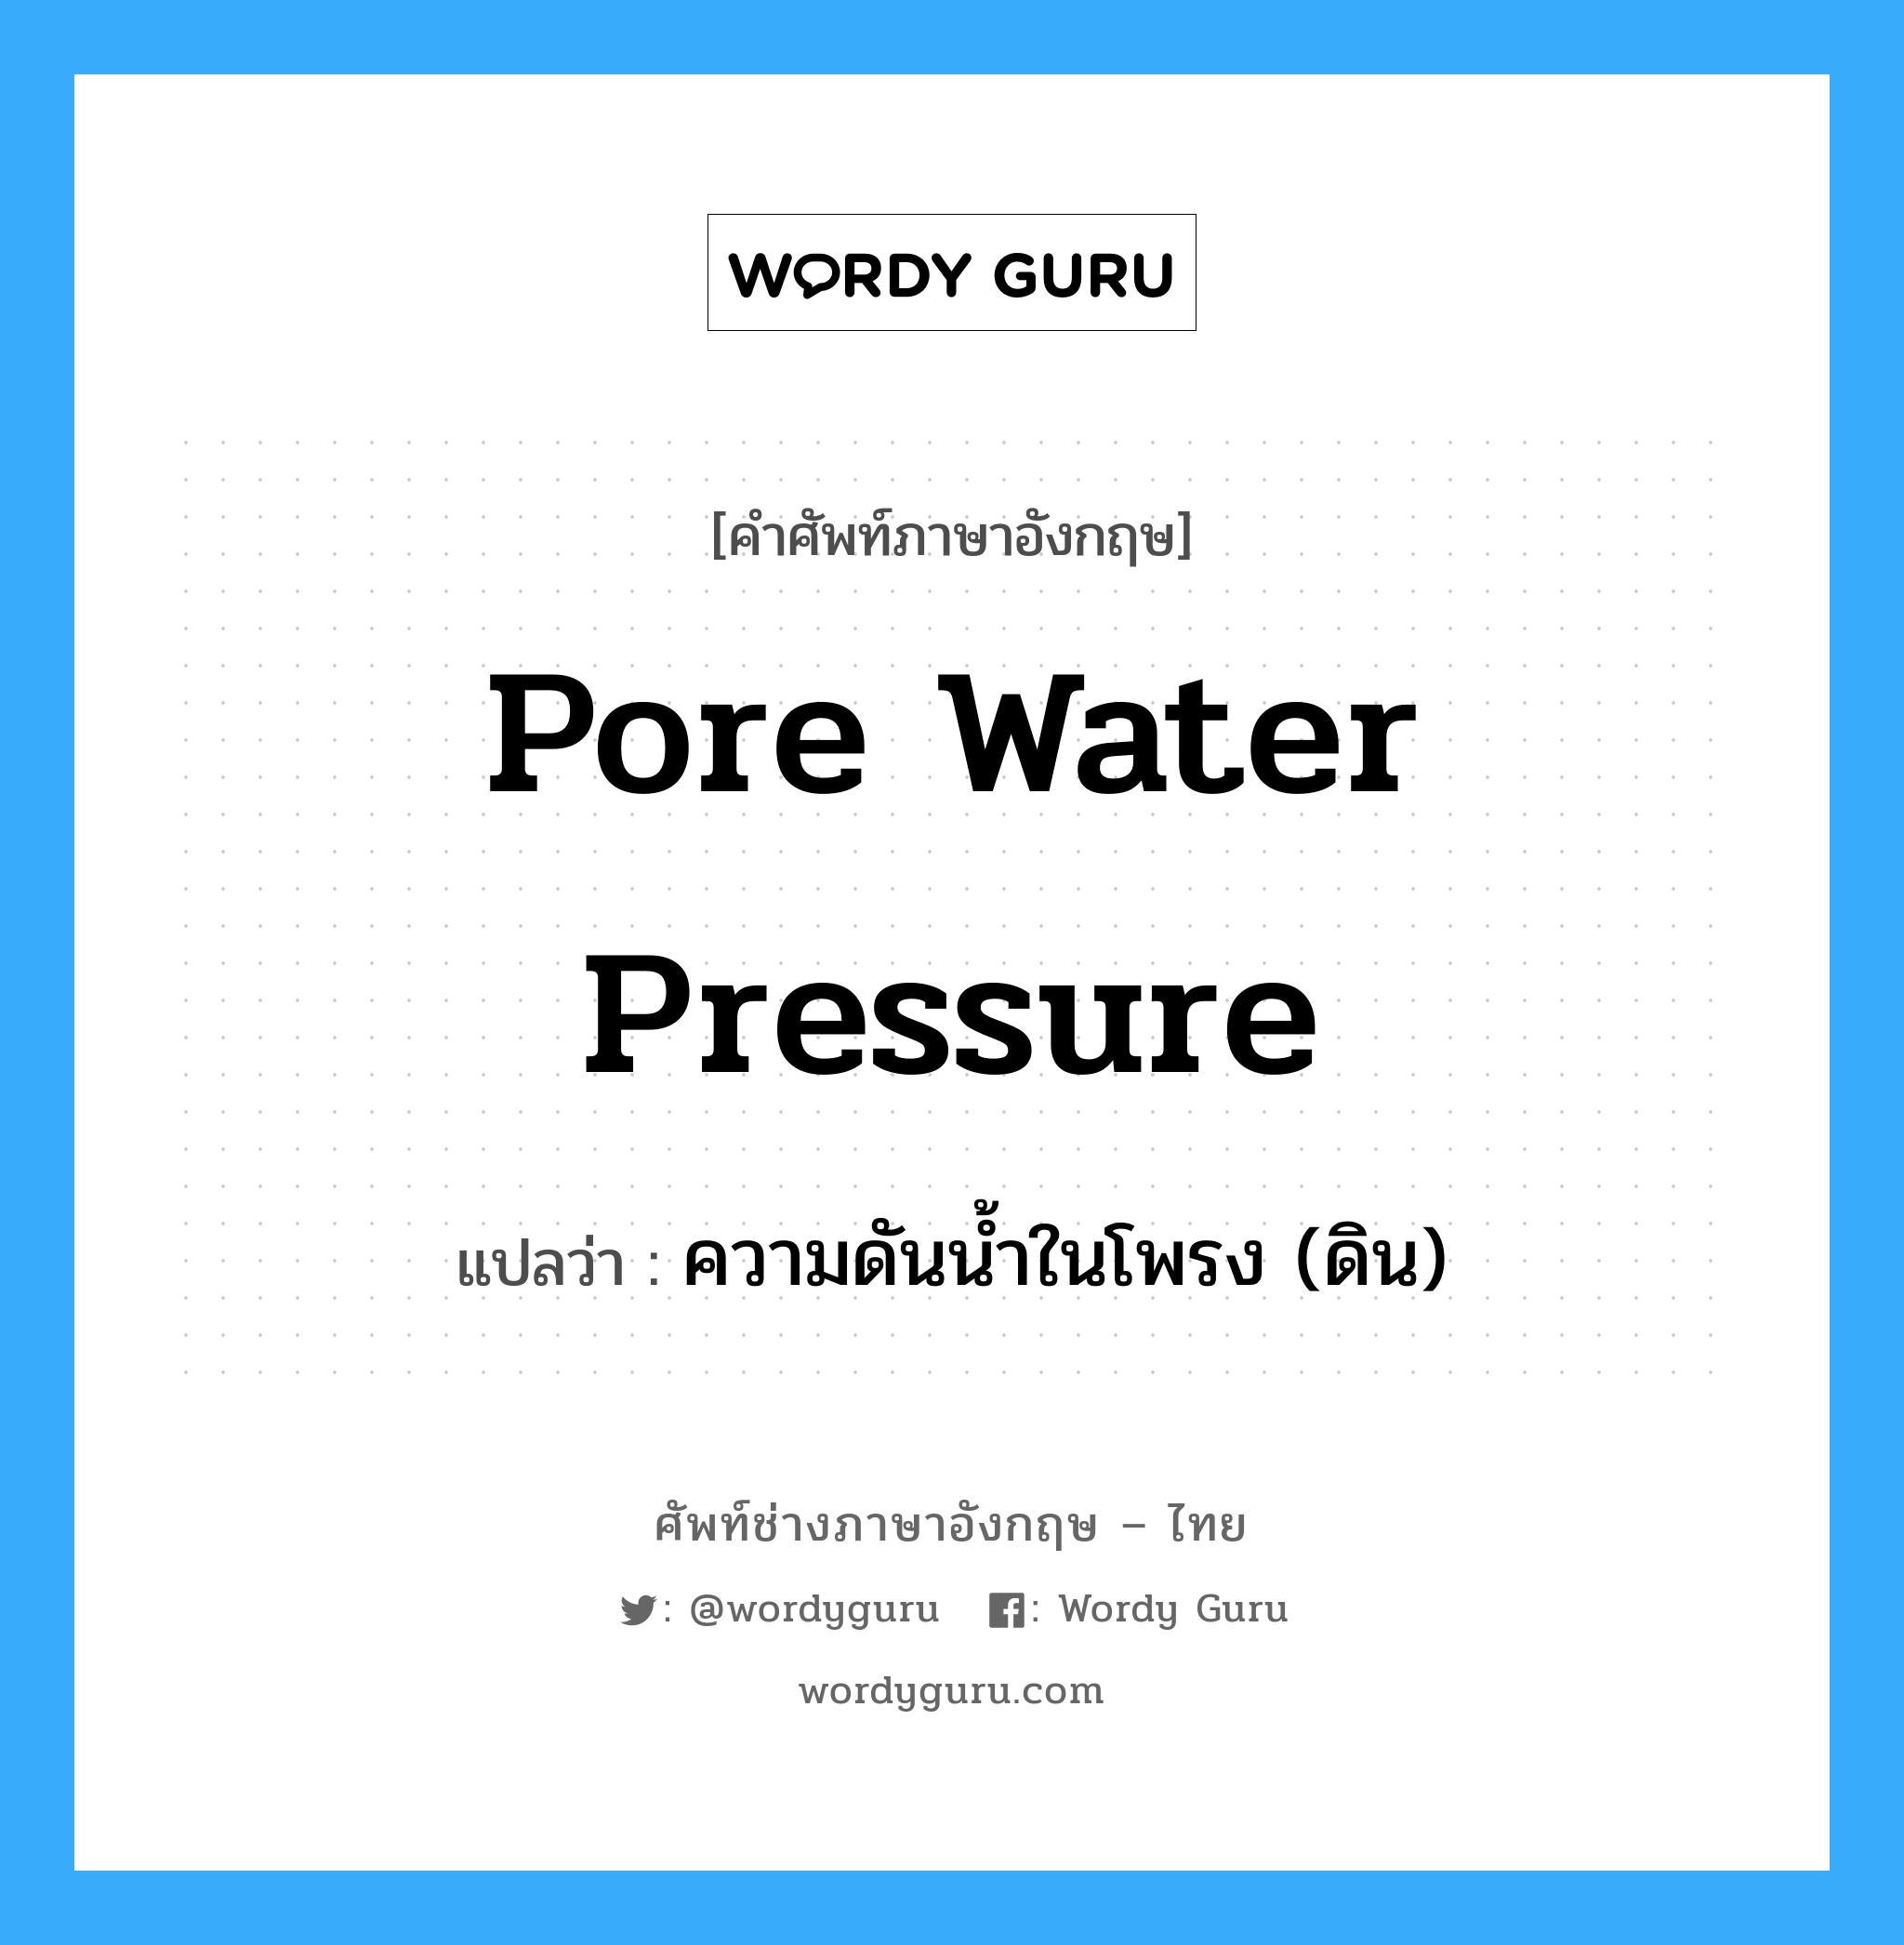 ความดันน้ำในโพรง (ดิน) ภาษาอังกฤษ?, คำศัพท์ช่างภาษาอังกฤษ - ไทย ความดันน้ำในโพรง (ดิน) คำศัพท์ภาษาอังกฤษ ความดันน้ำในโพรง (ดิน) แปลว่า pore water pressure